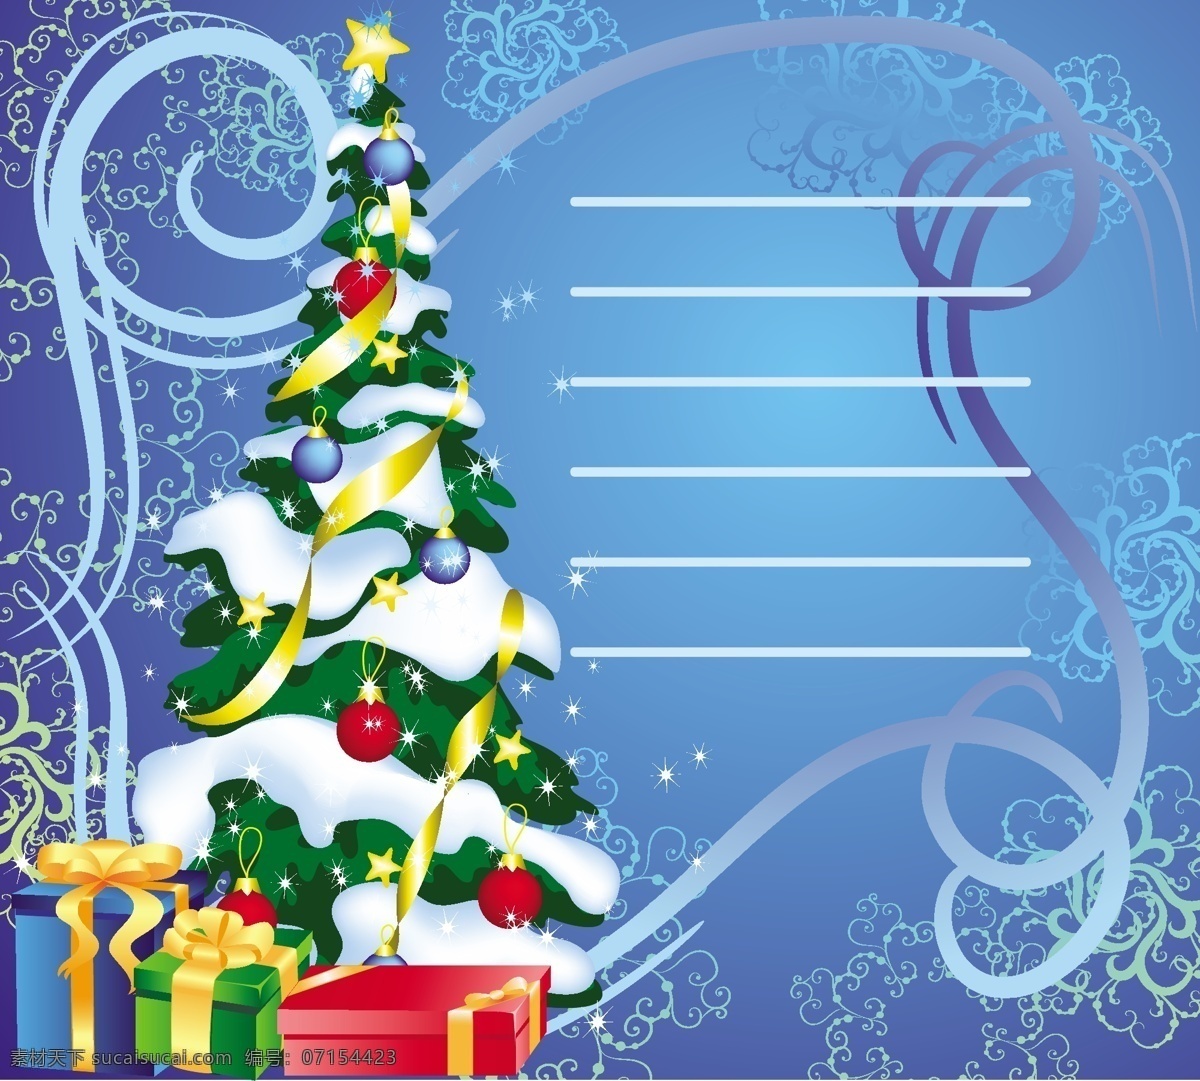 蓝色 梦幻 圣诞节 矢量图 圣诞礼物 圣诞树 五彩缤纷 雪花 装饰 节日素材